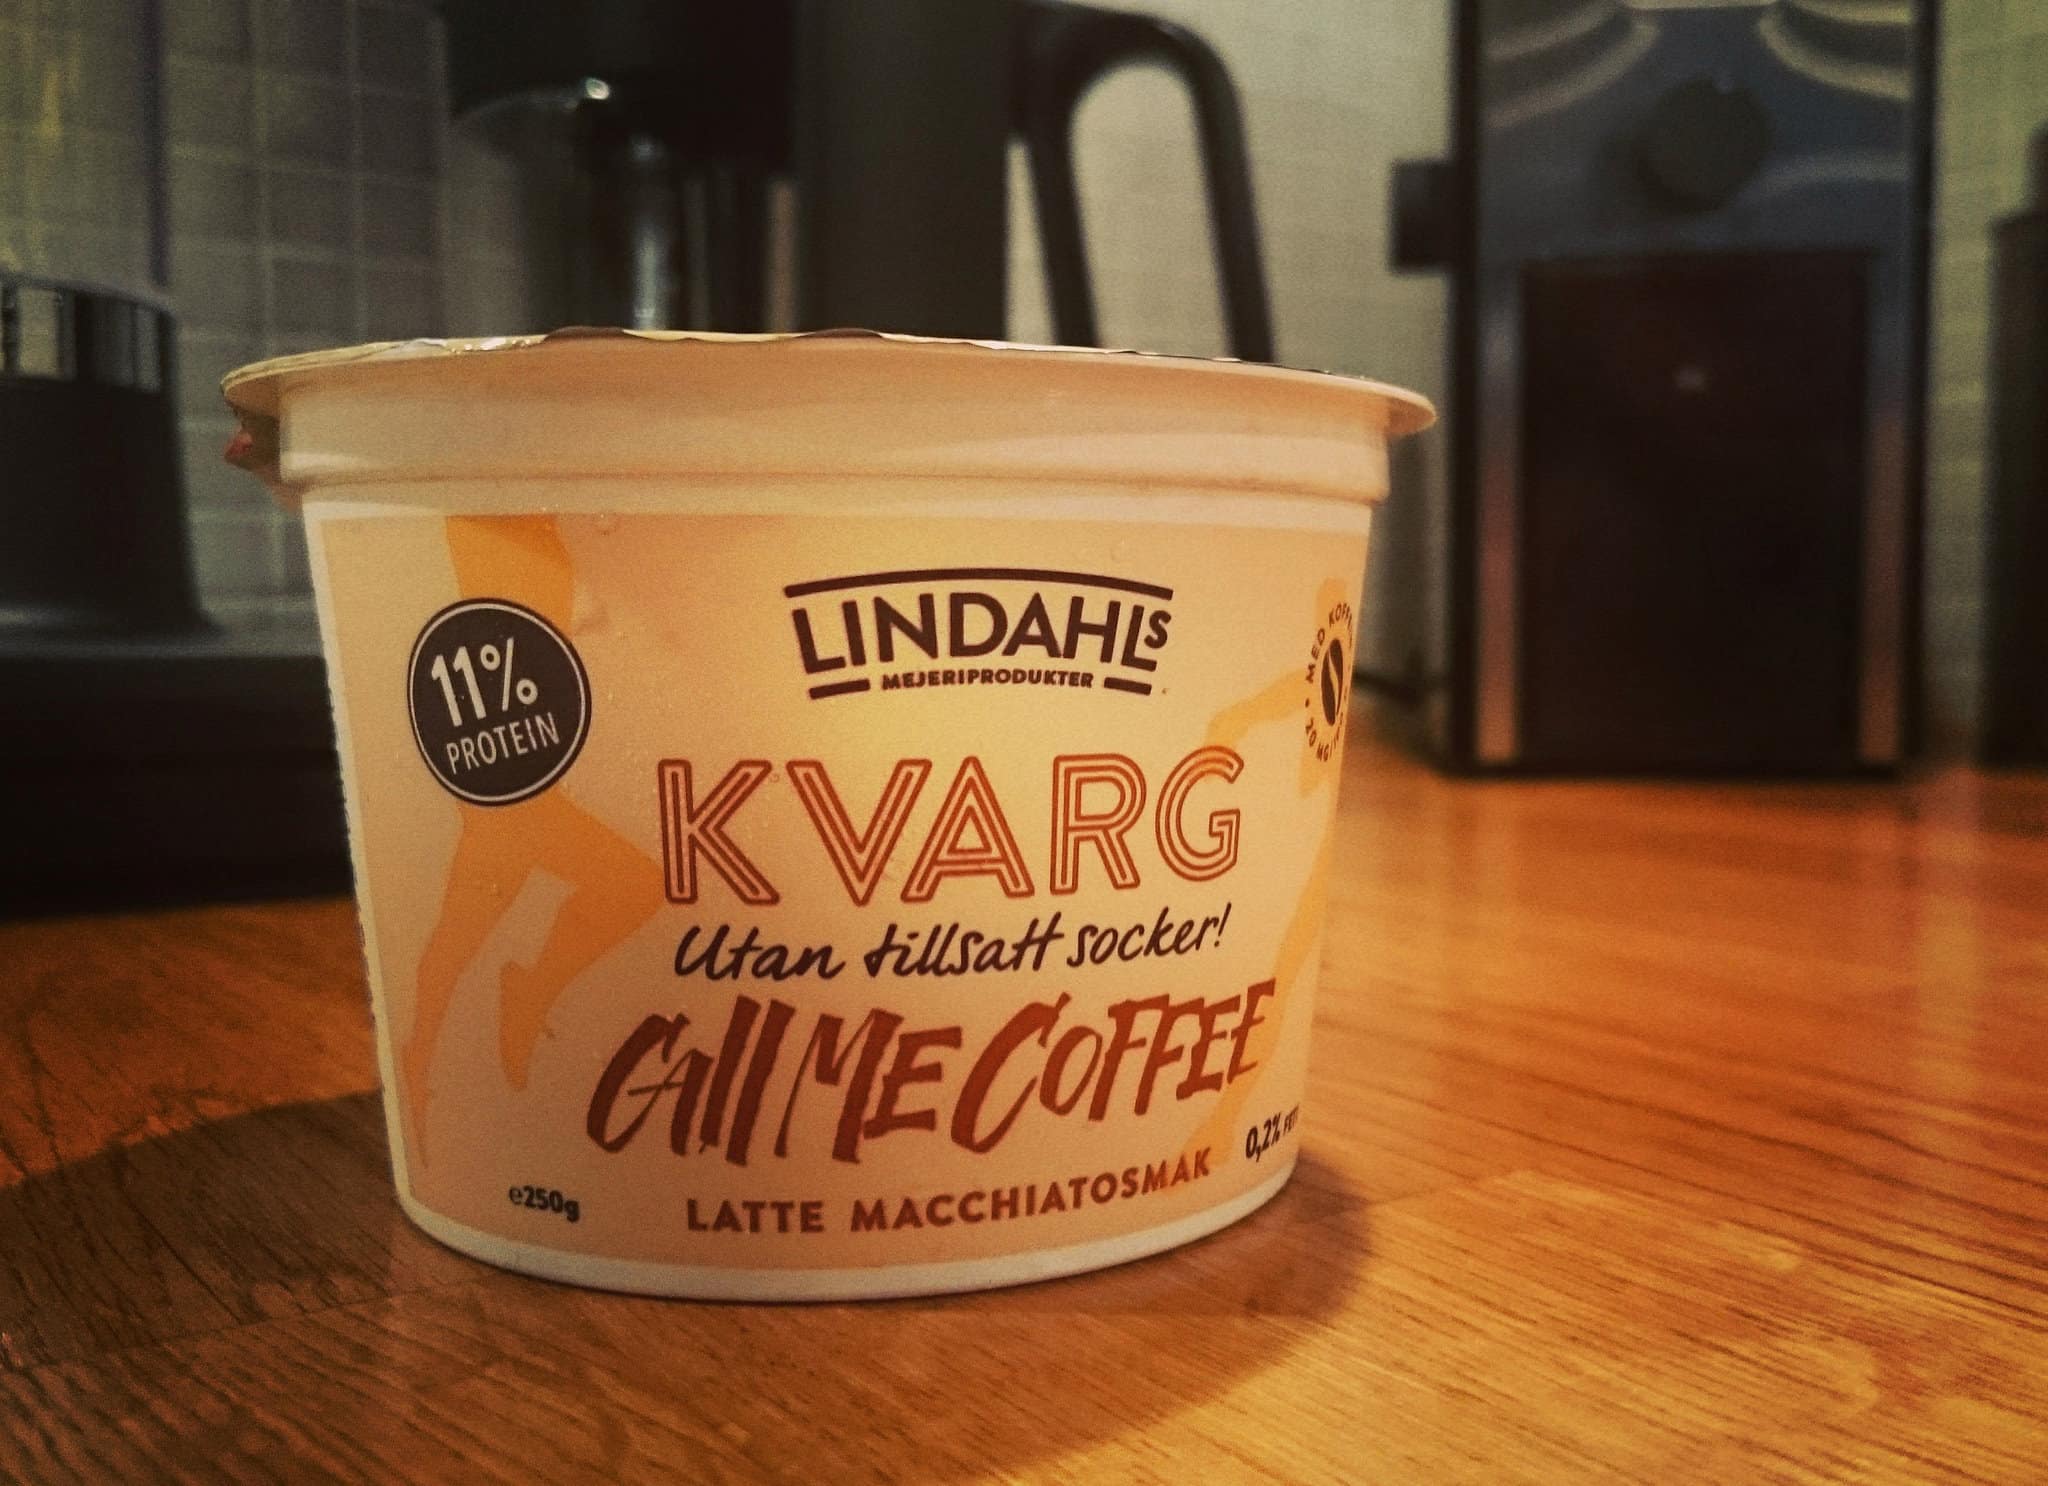 Lindahls Kvarg Call Me Coffee vilket äventyr i munnen